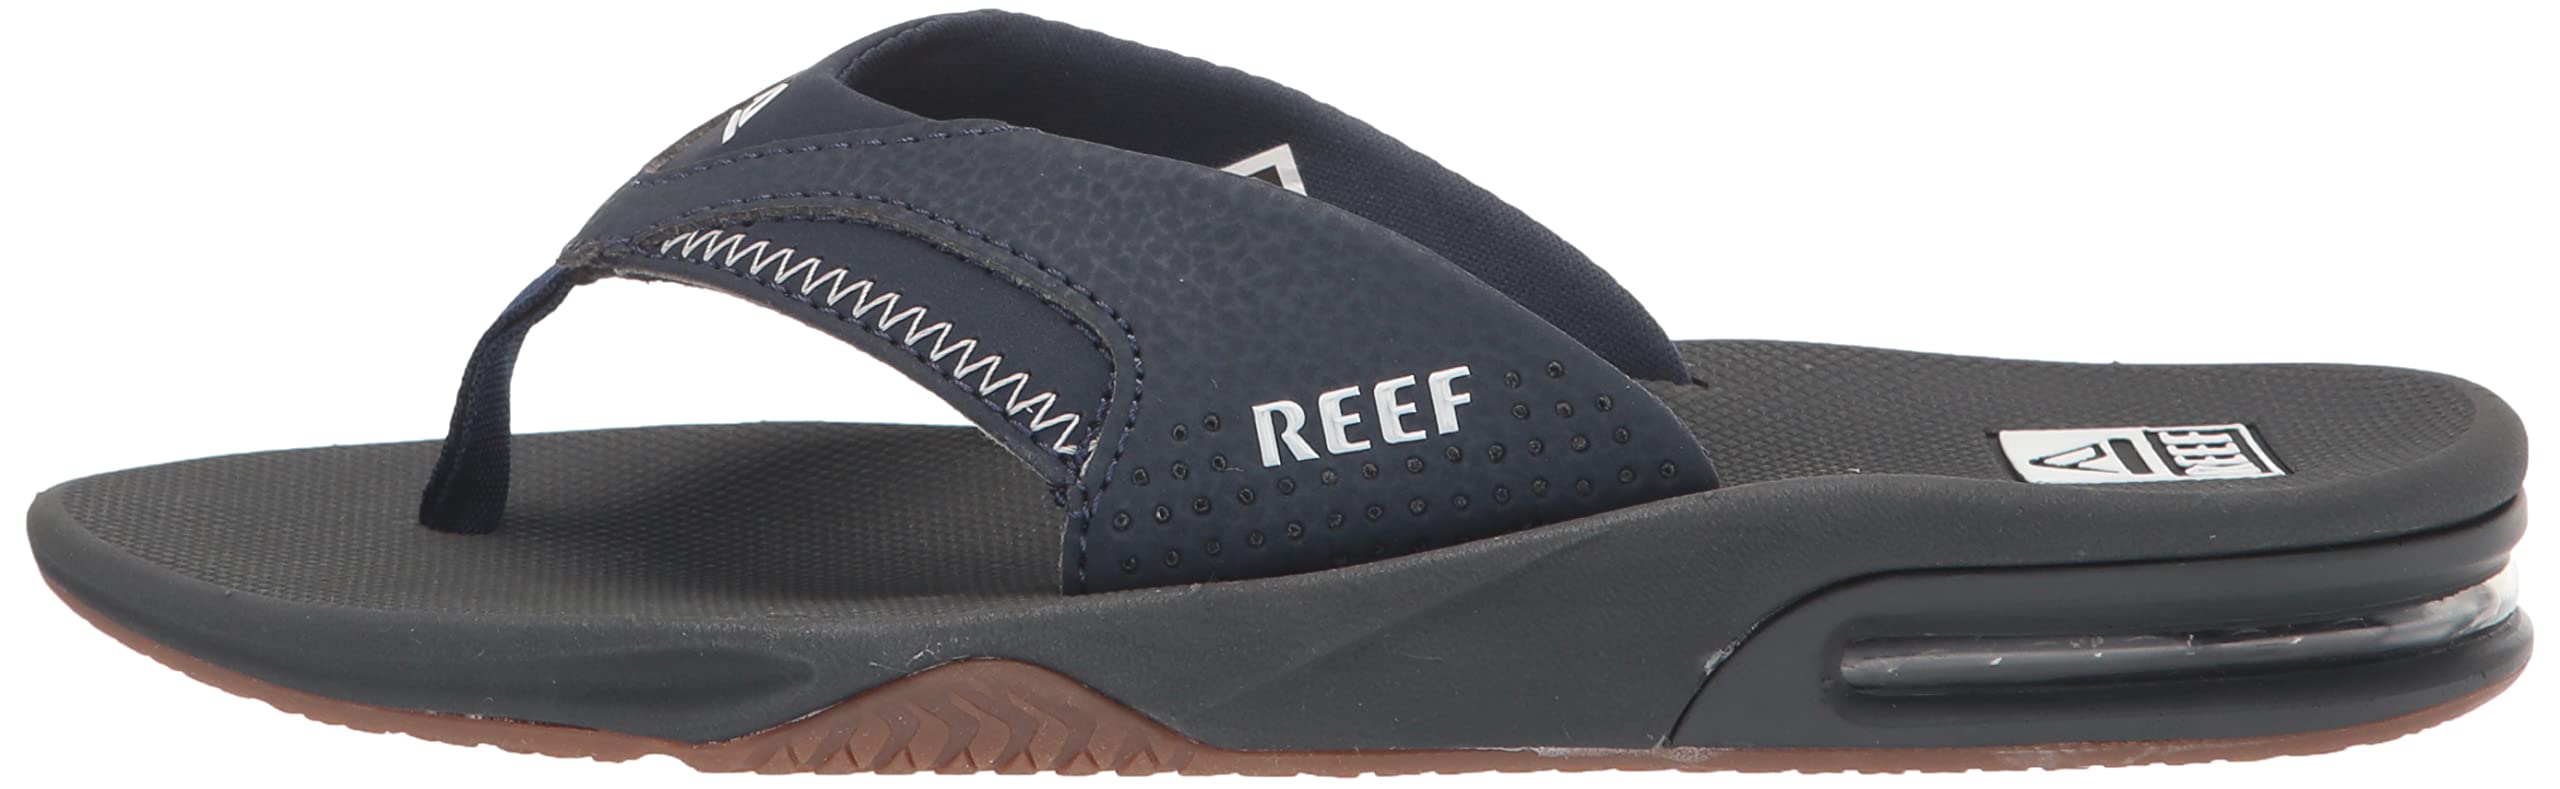 Reef Mens Fanning Sandal | Bottle Opener Flip Flop